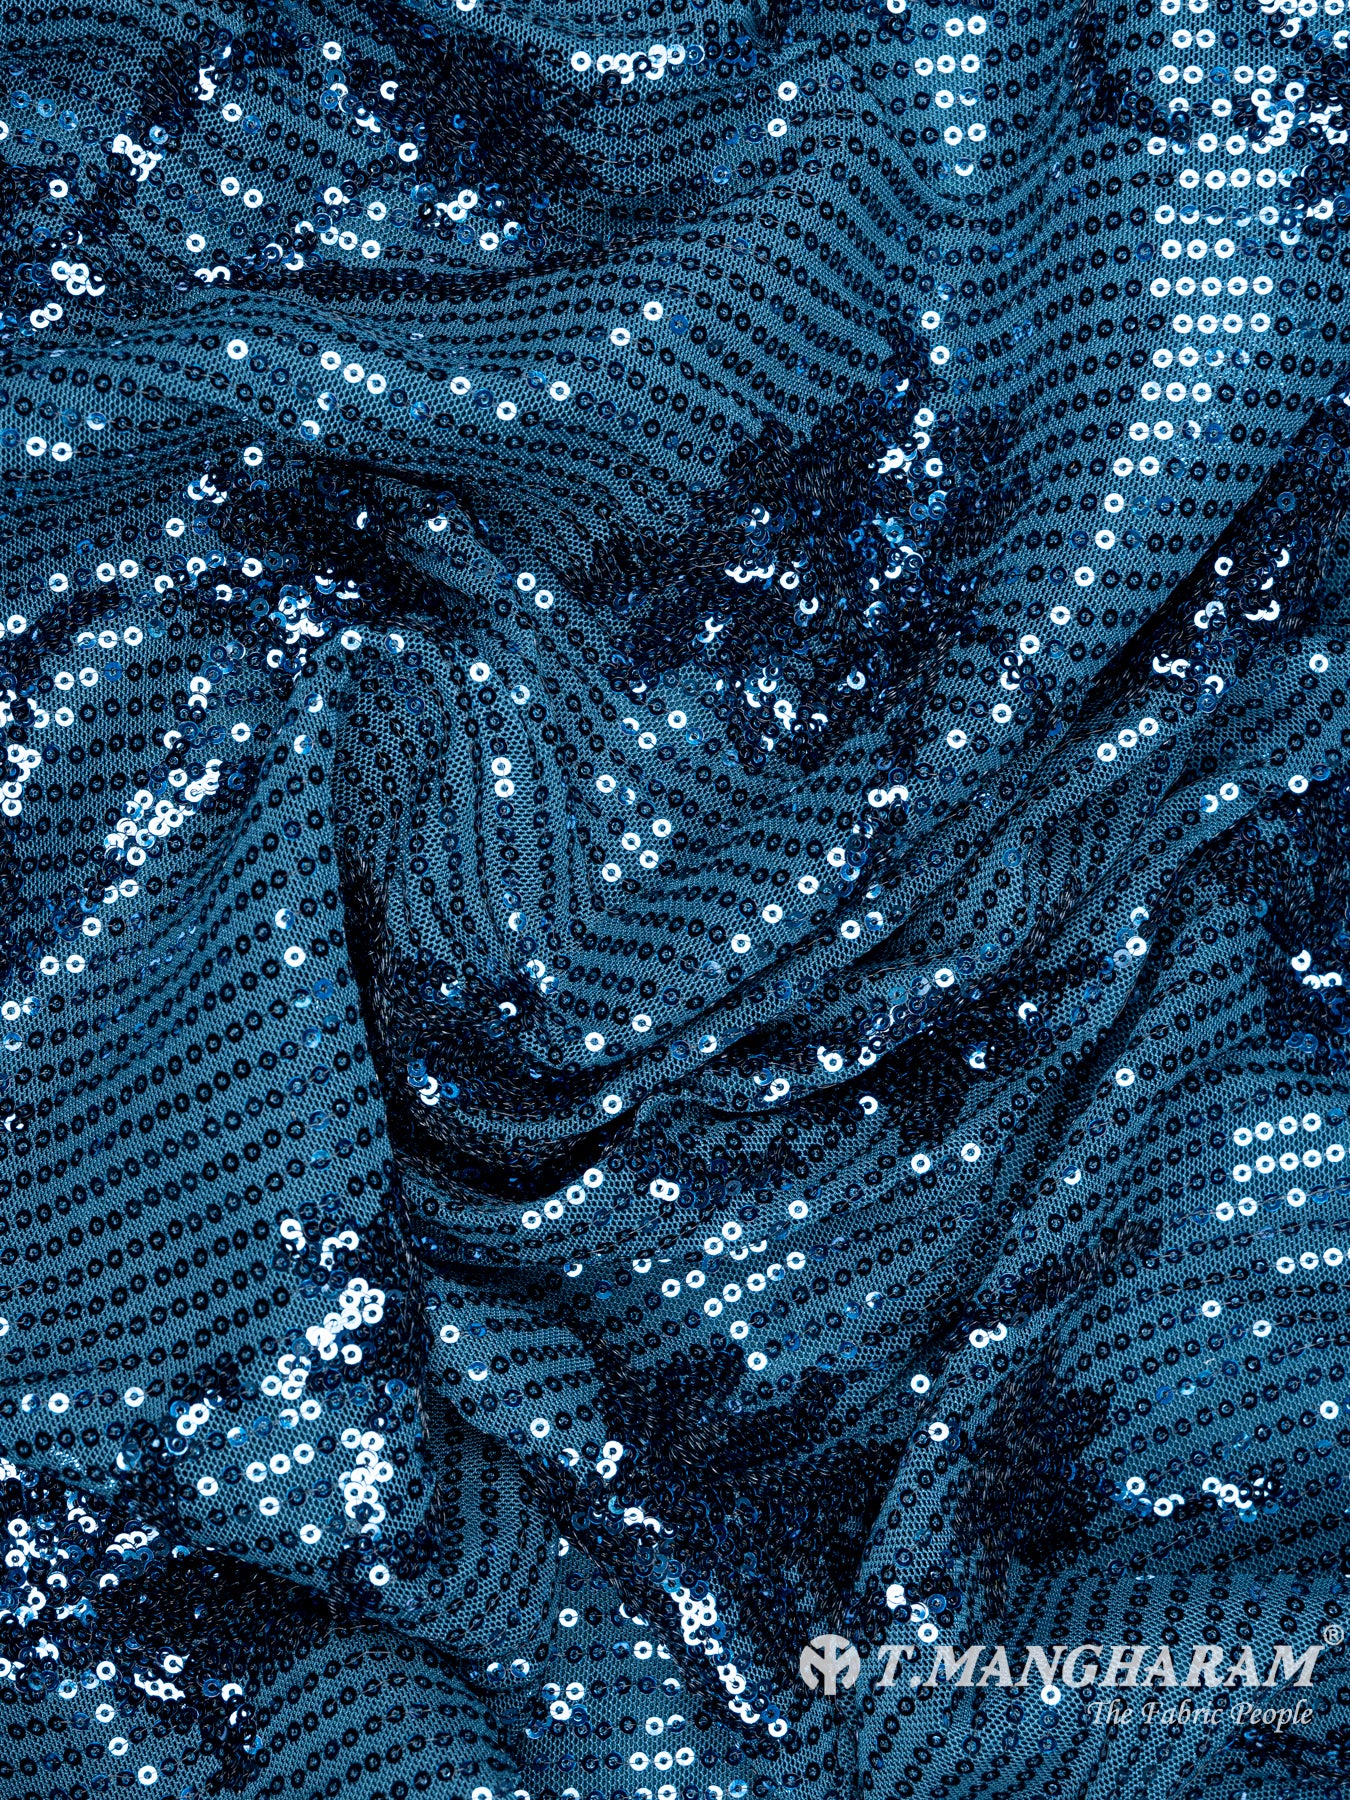 Blue Fancy Net Fabric - EB3574 view-4